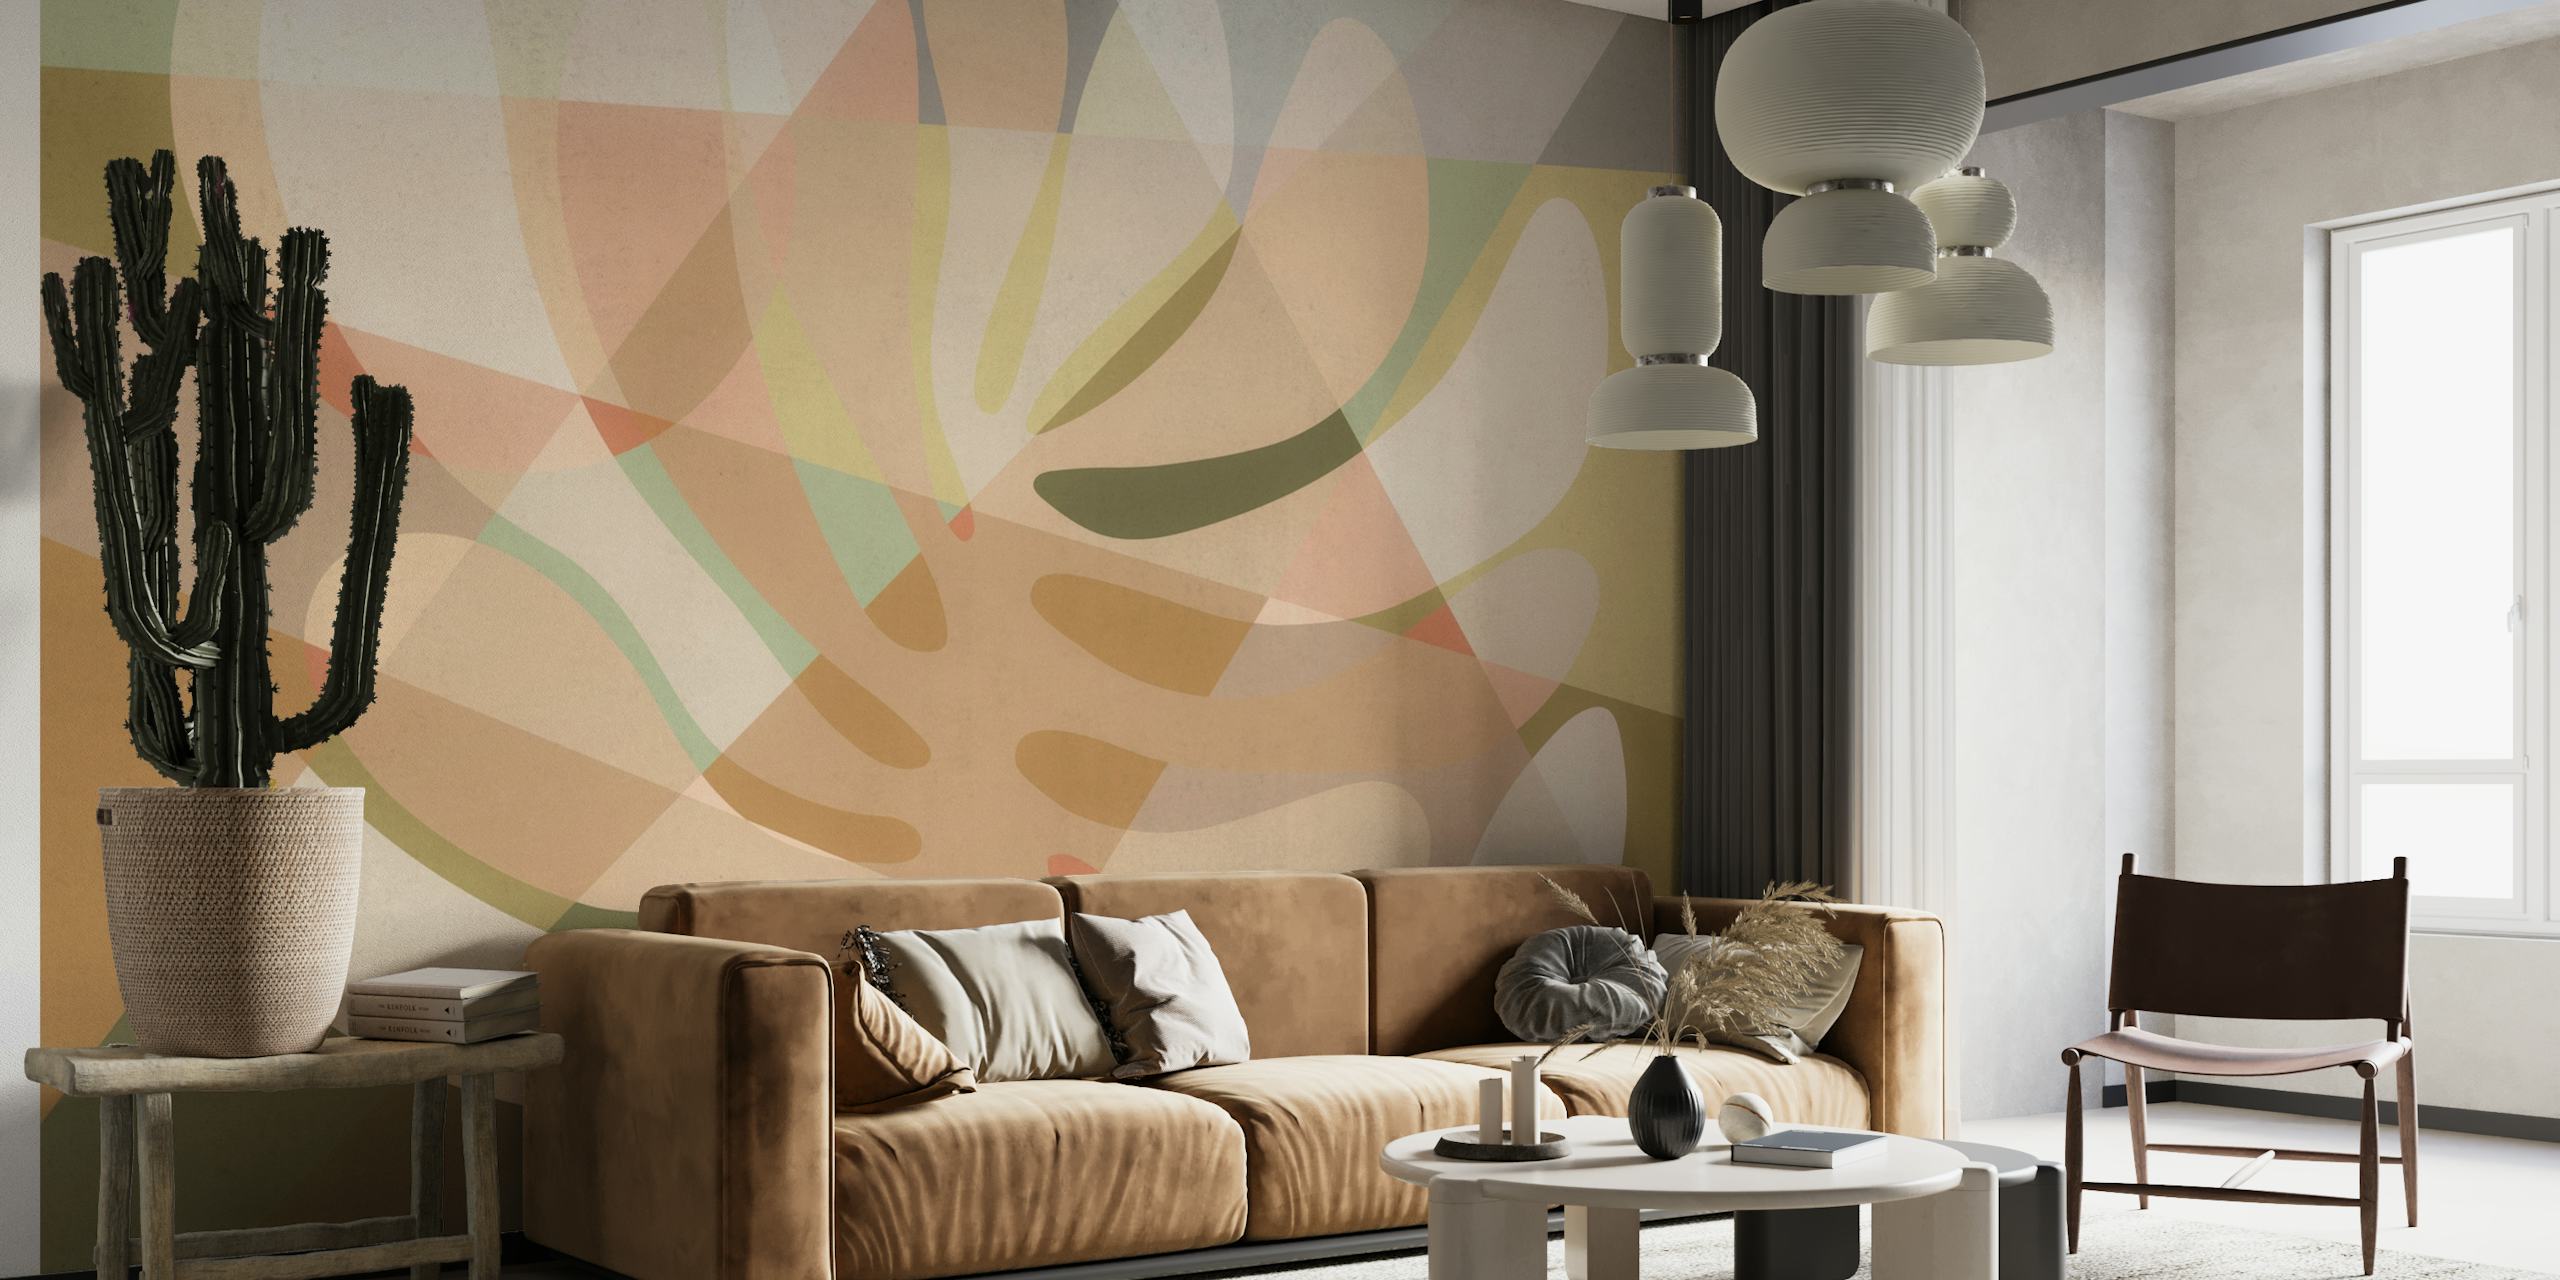 Mural de pared de árbol abstracto en tonos cálidos de beige, tostado y crema